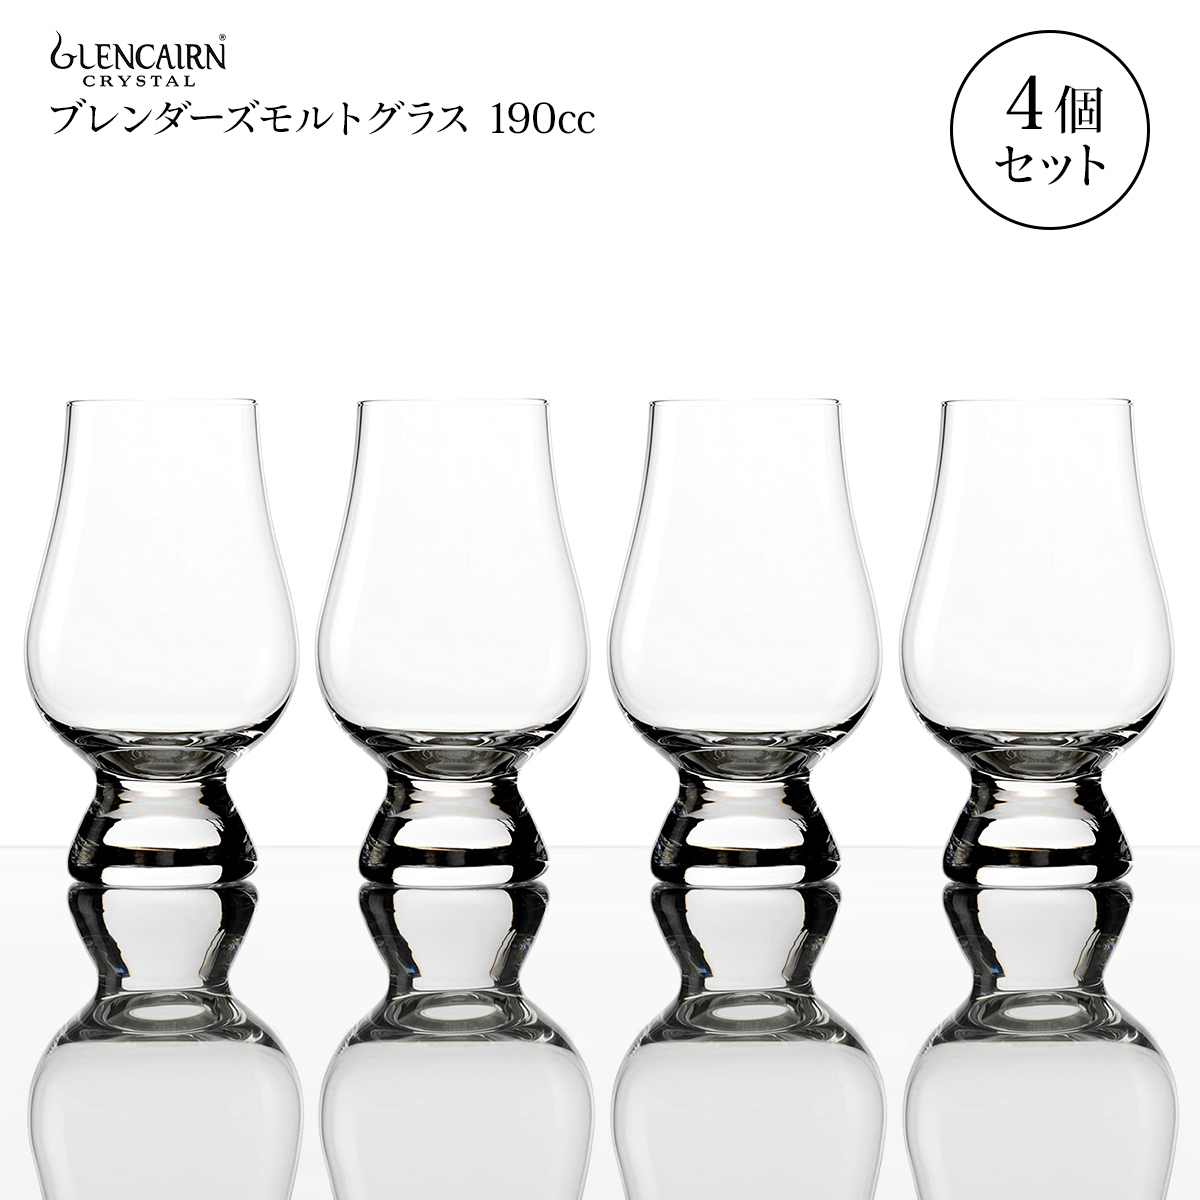 グレンケアン ブレンダーズグラス 190cc 4個セット ウイスキー グラス 高級 ペア モルトグラス テイスティンググラスの画像1